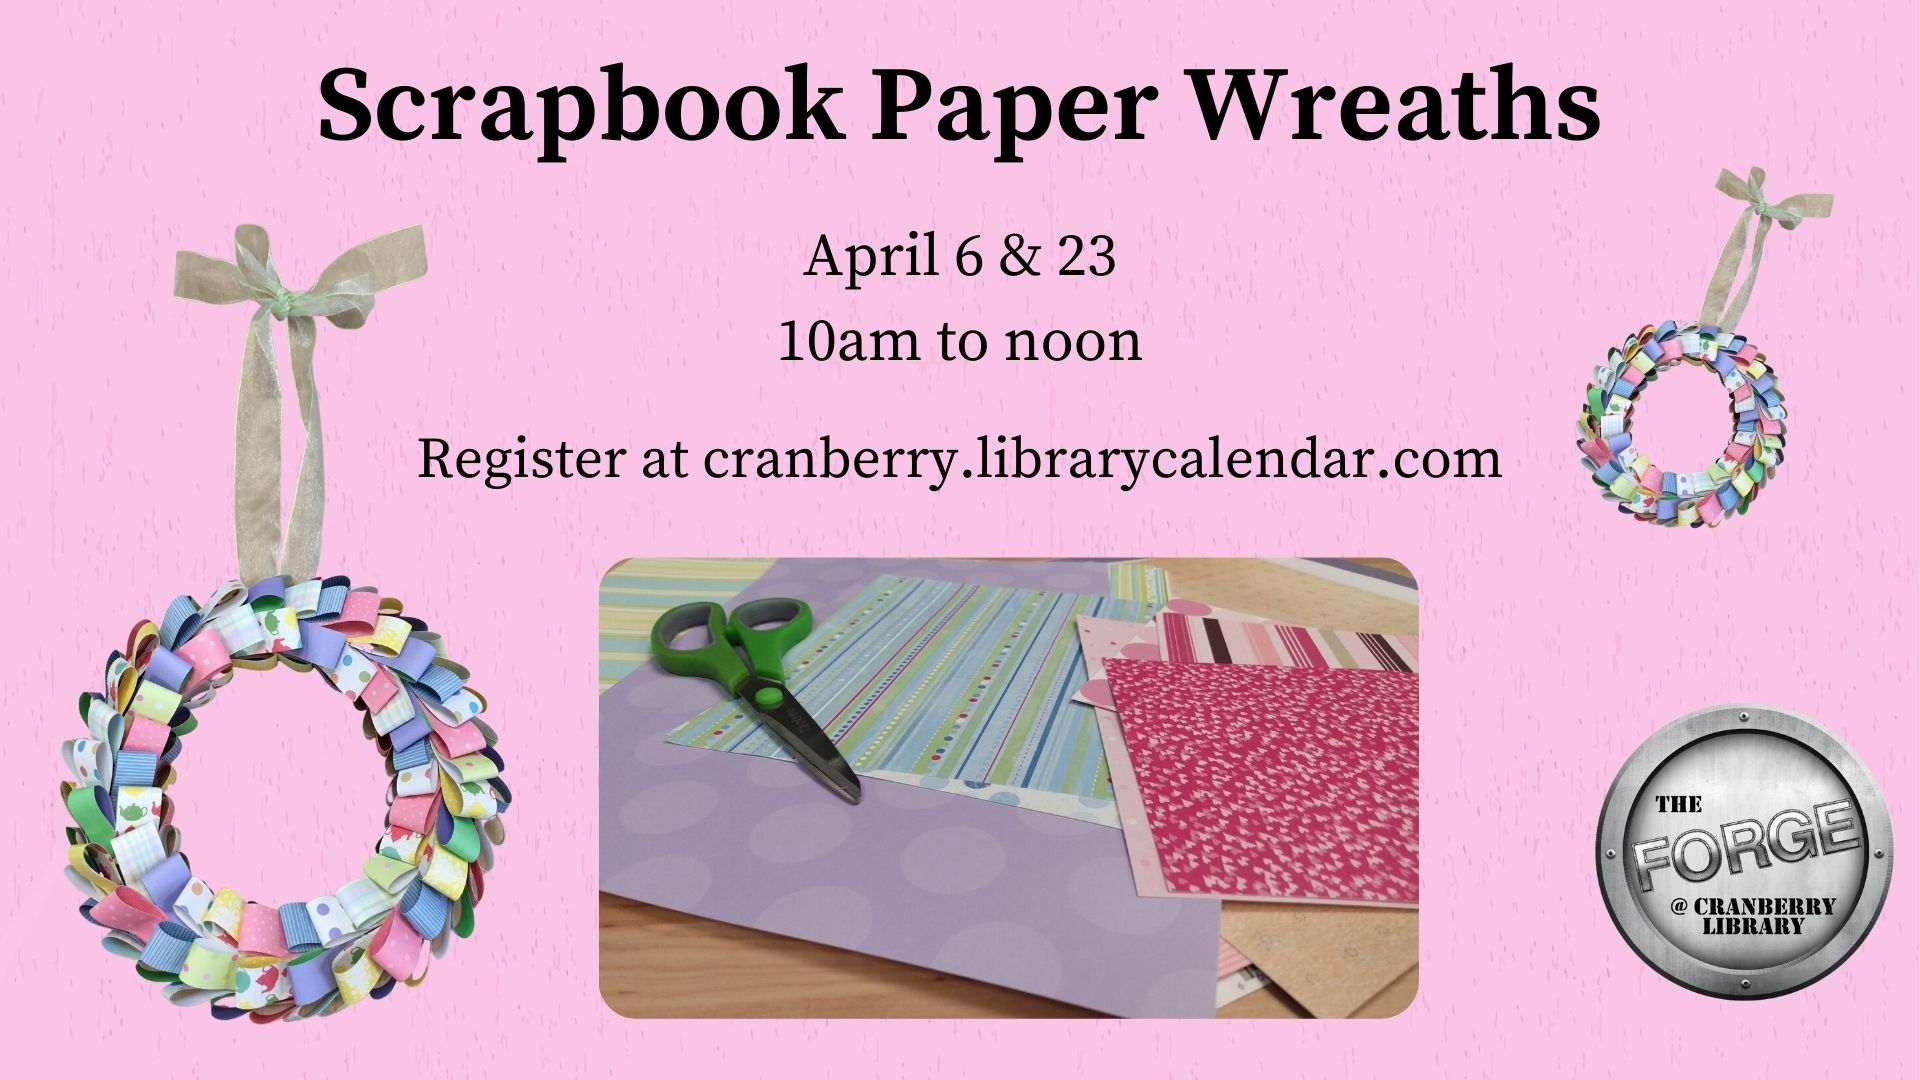 Flyer for Scrapbook Paper Wreaths 